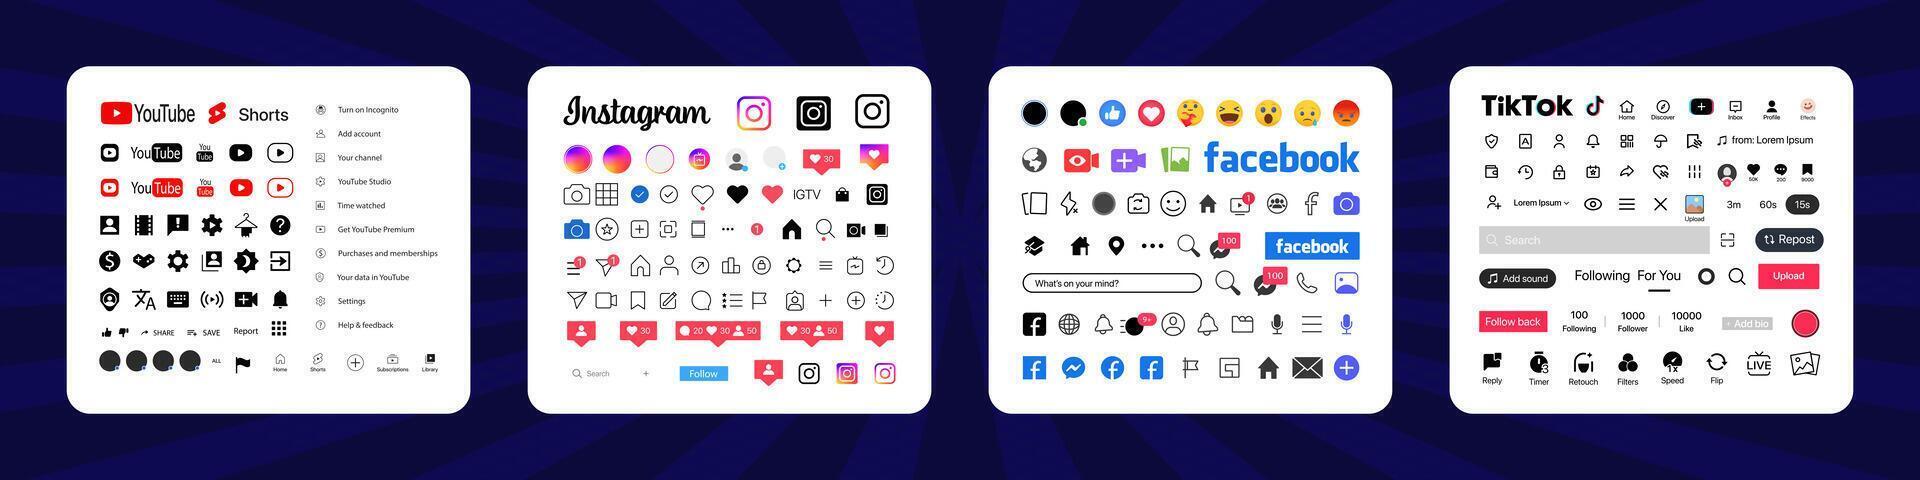 instagram, tik tok, Facebook, Youtube botón icono. conjunto pantalla social medios de comunicación y social red interfaz modelo. cuentos botón, símbolo, firmar logo. editorial vector